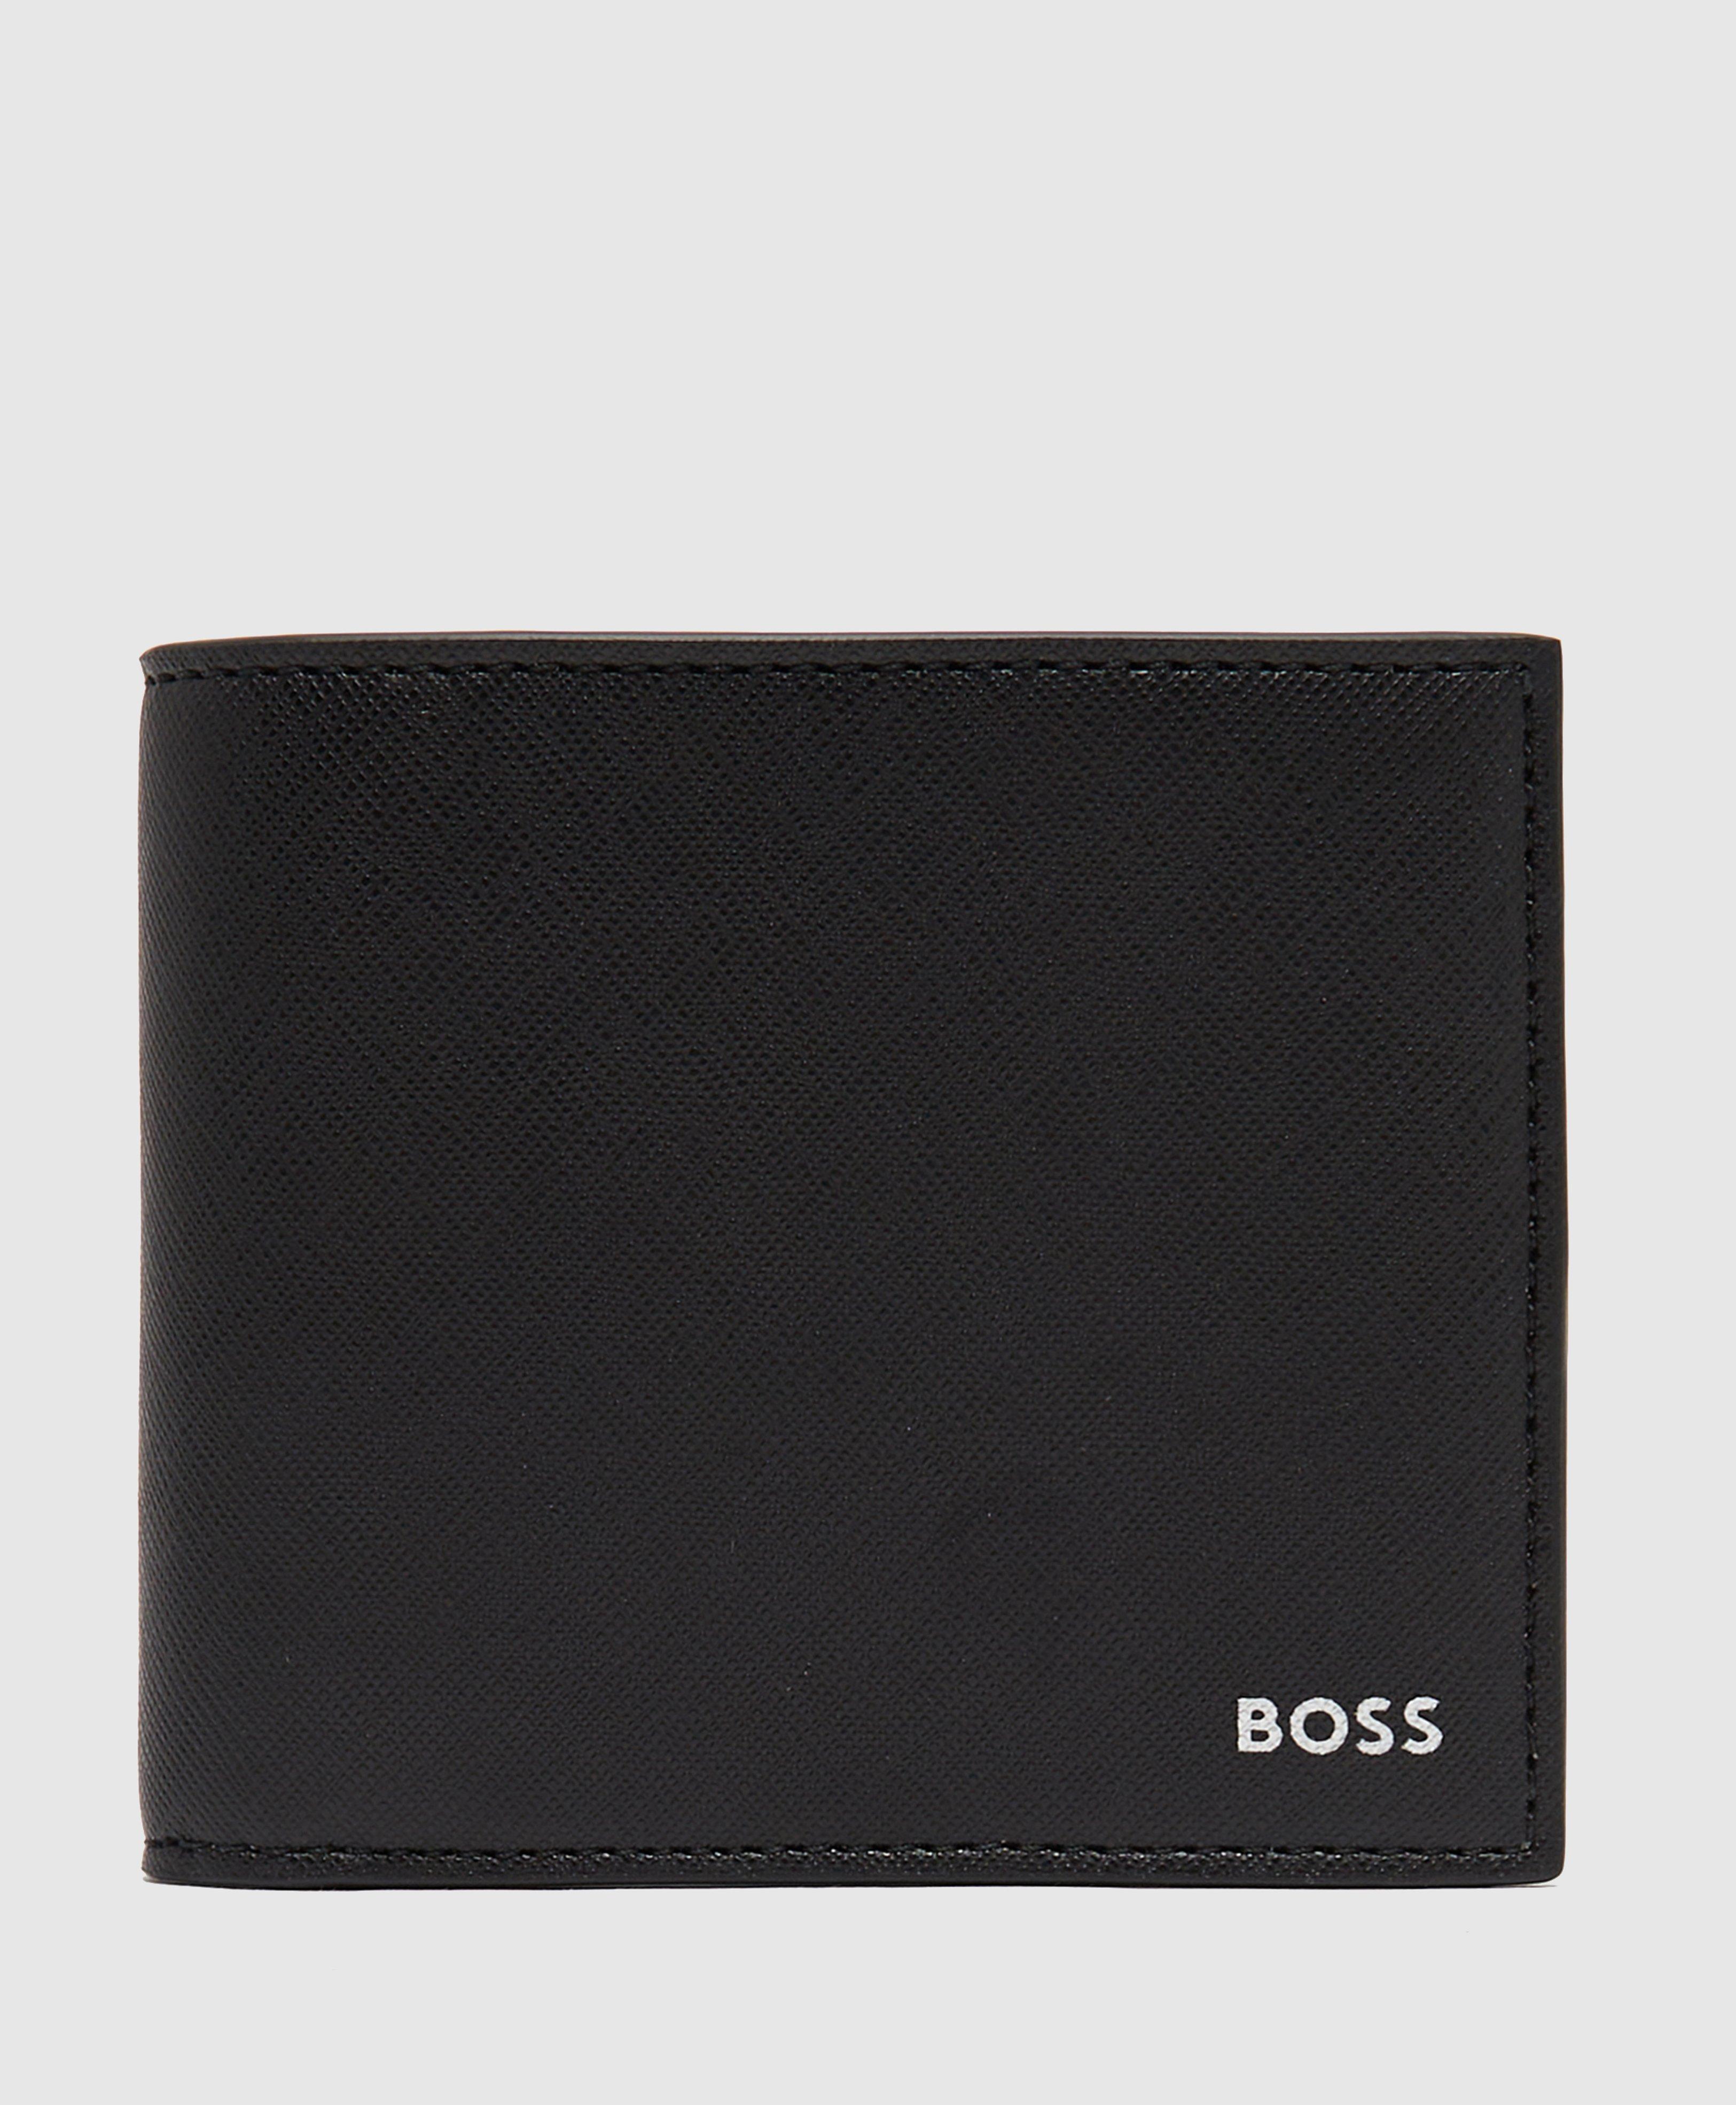 BOSS by HUGO BOSS Zair Billfold Wallet in Black for Men | Lyst Canada